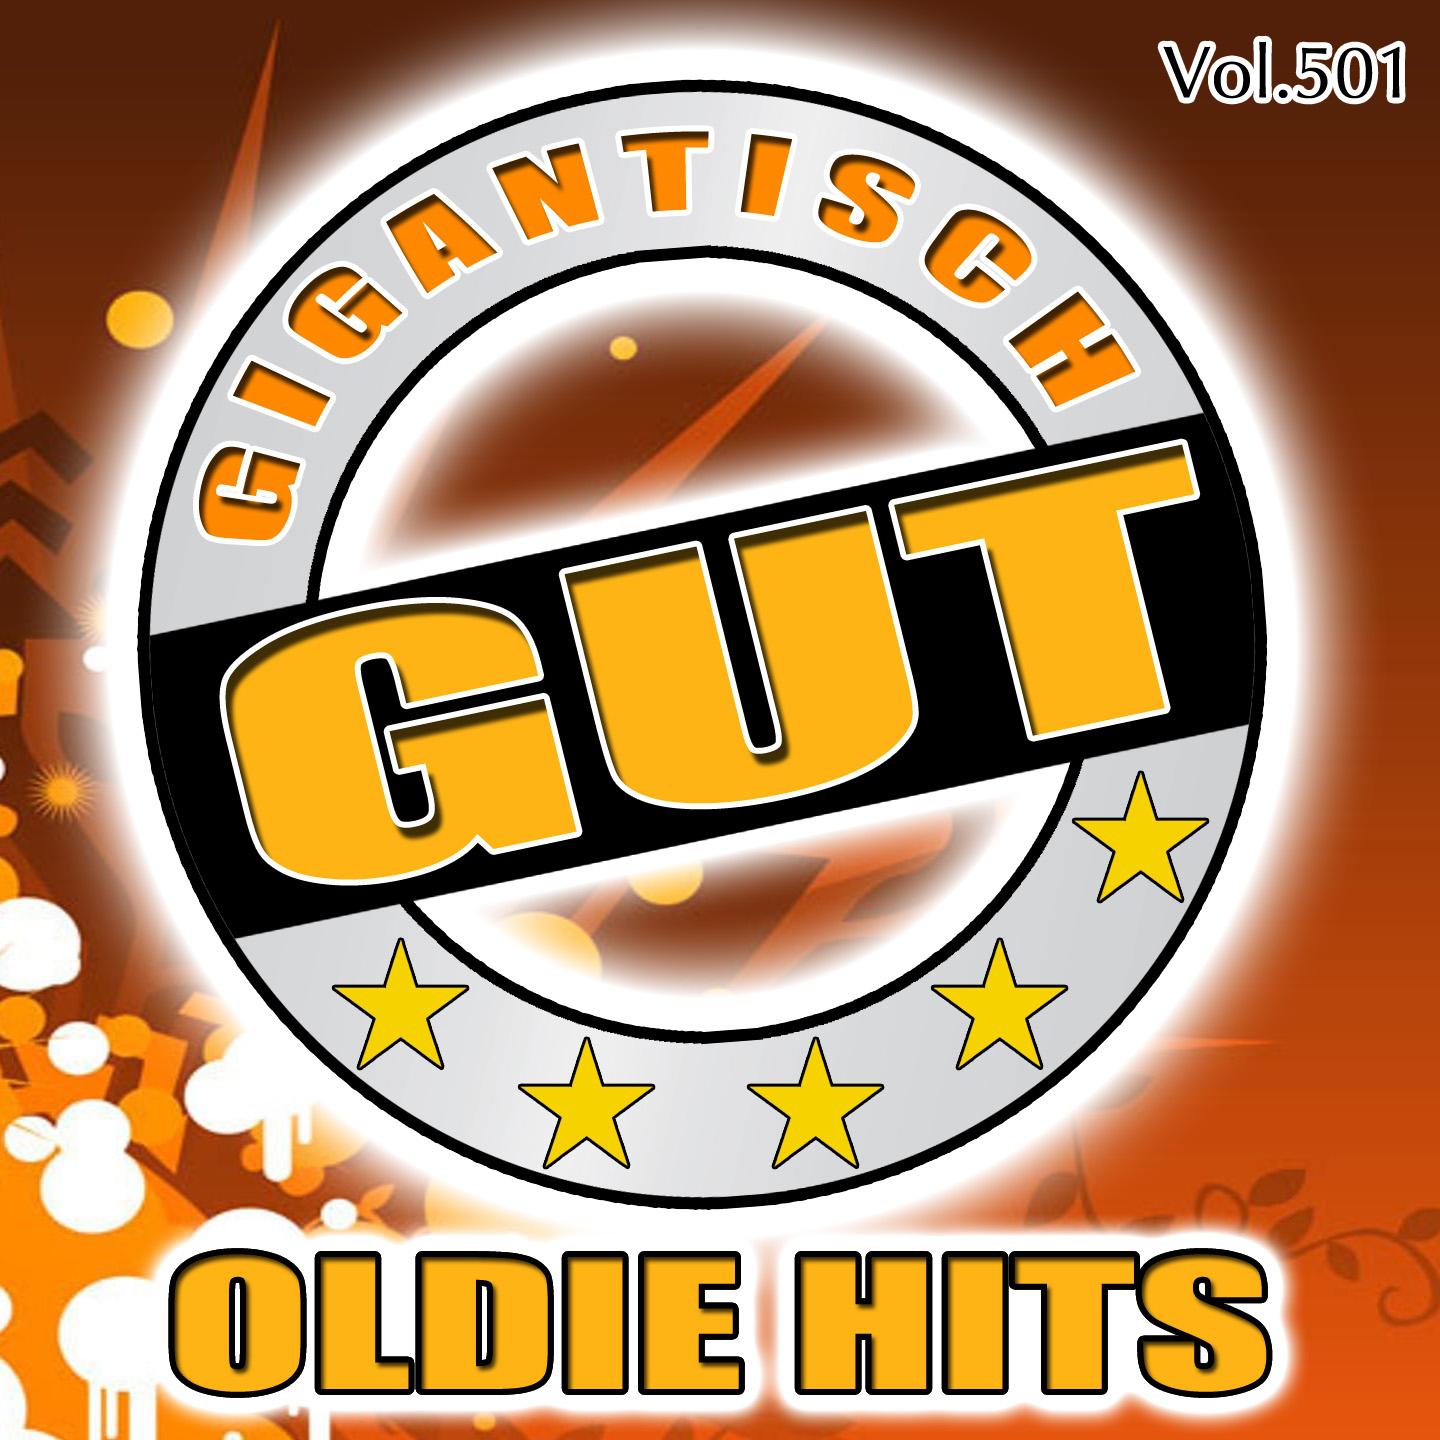 Gigantisch Gut: Oldie Hits, Vol. 501